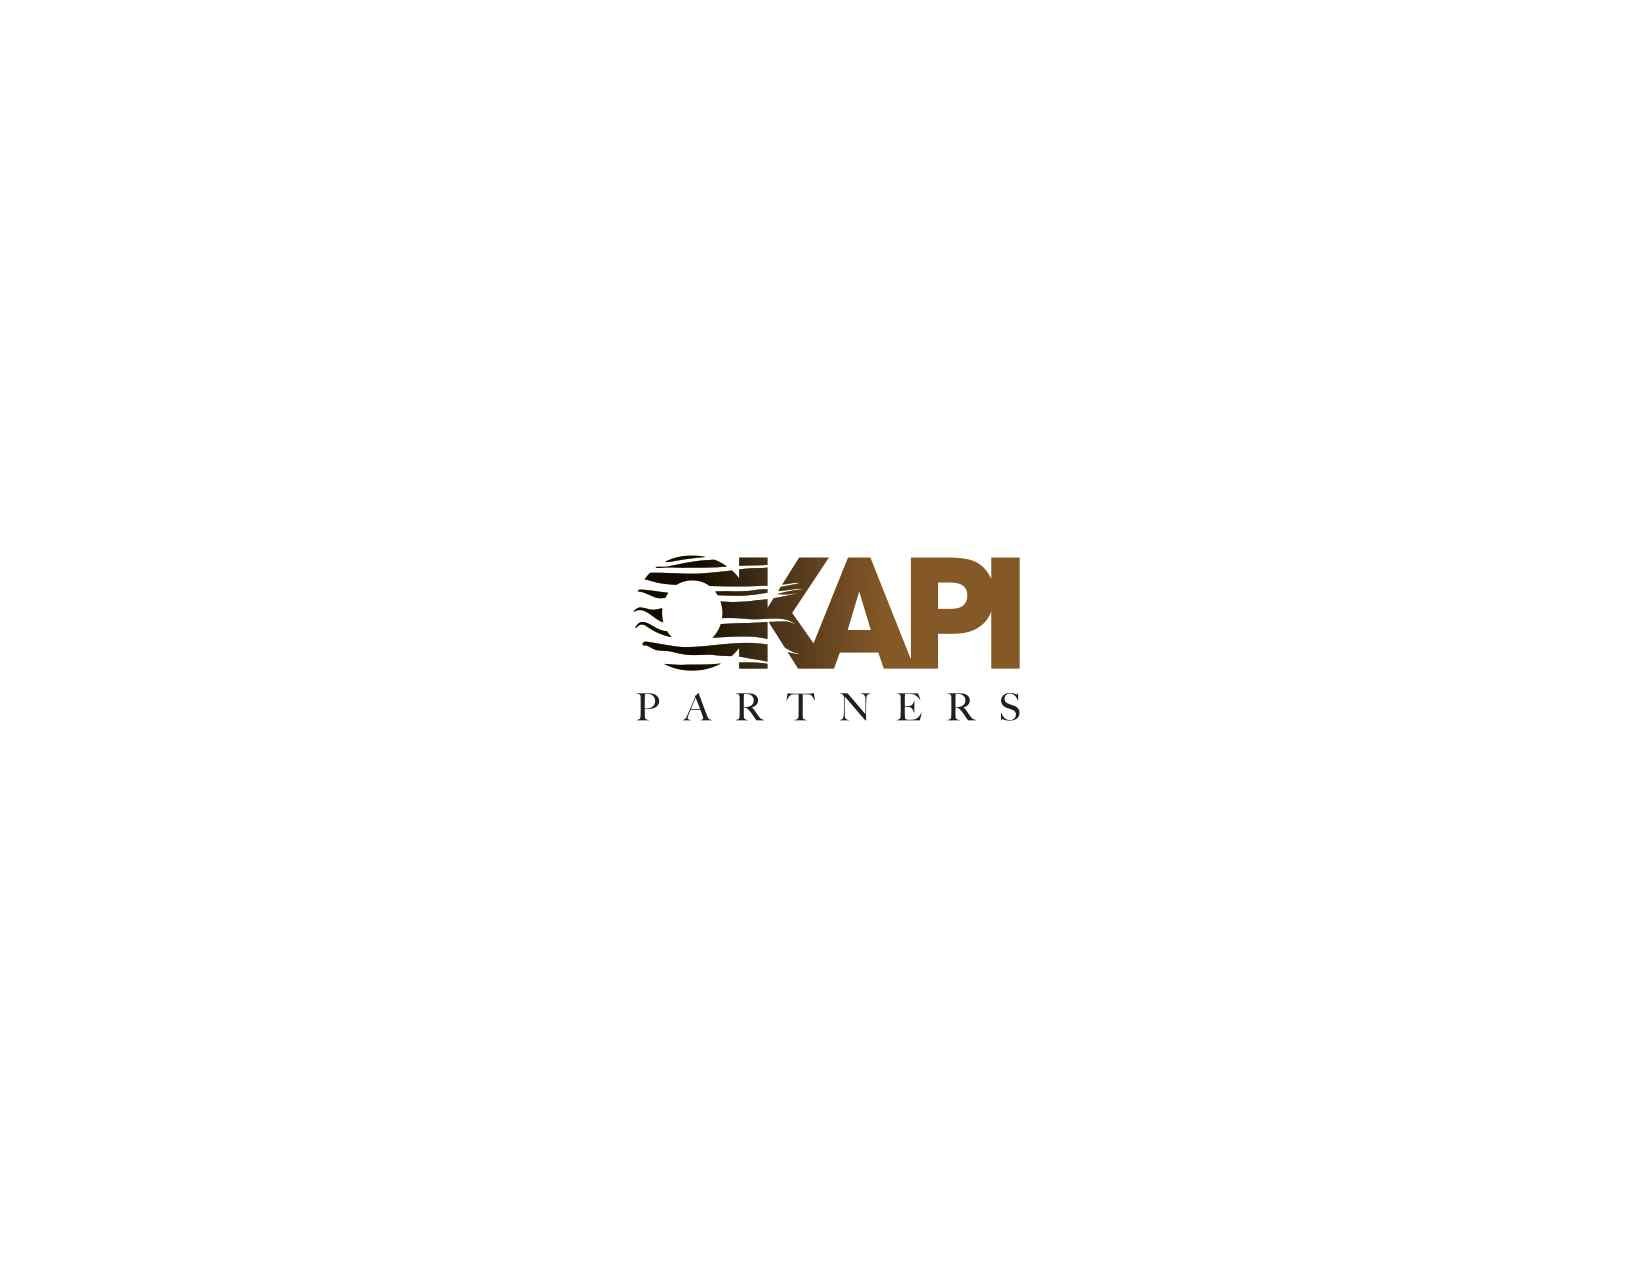 Okapi_Partners logo.jpg